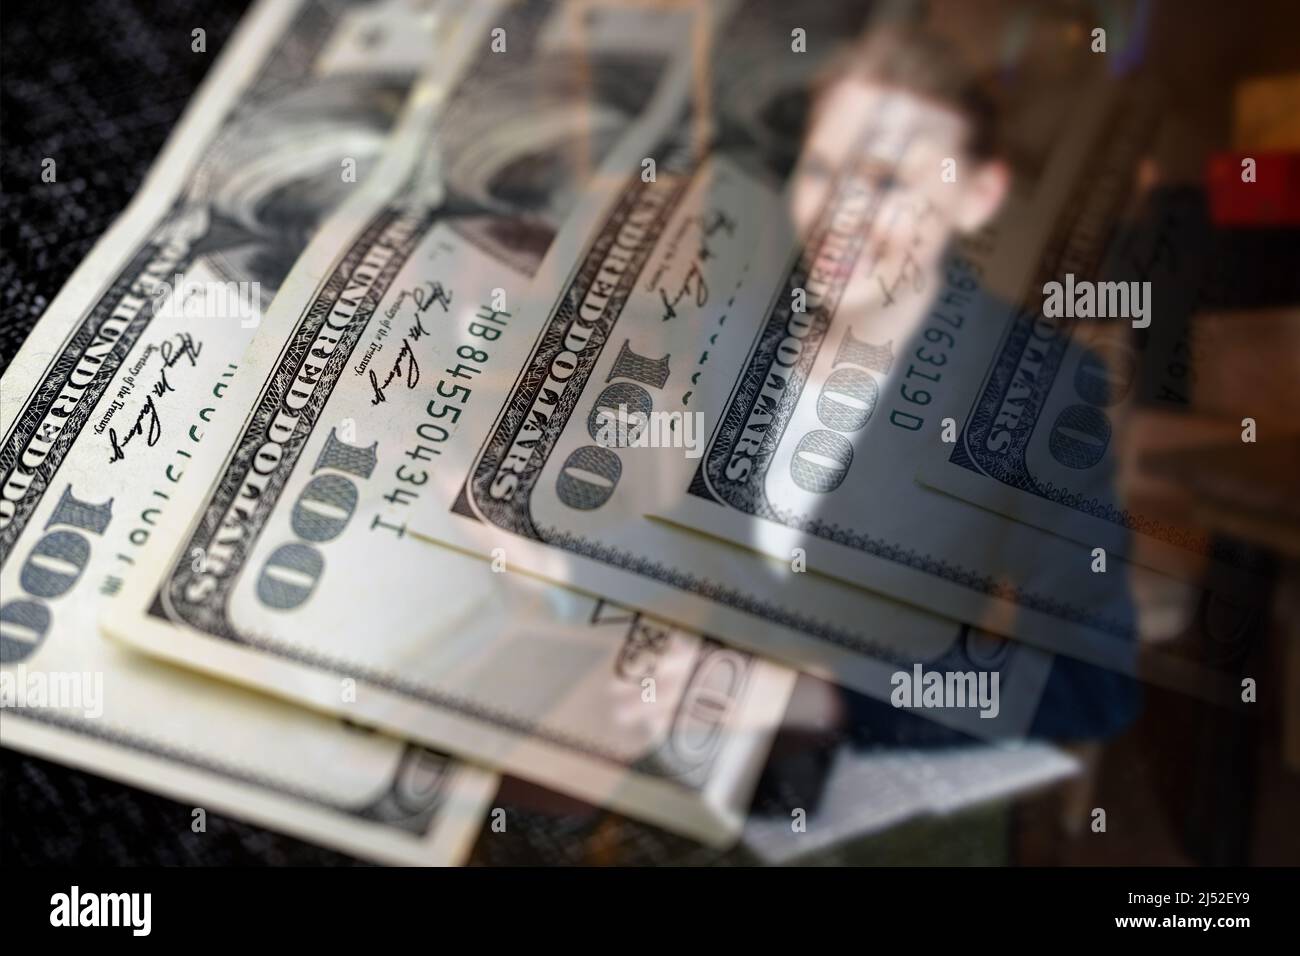 Économie, finance et affaires : exécutive féminine et billets de 100 dollars Banque D'Images